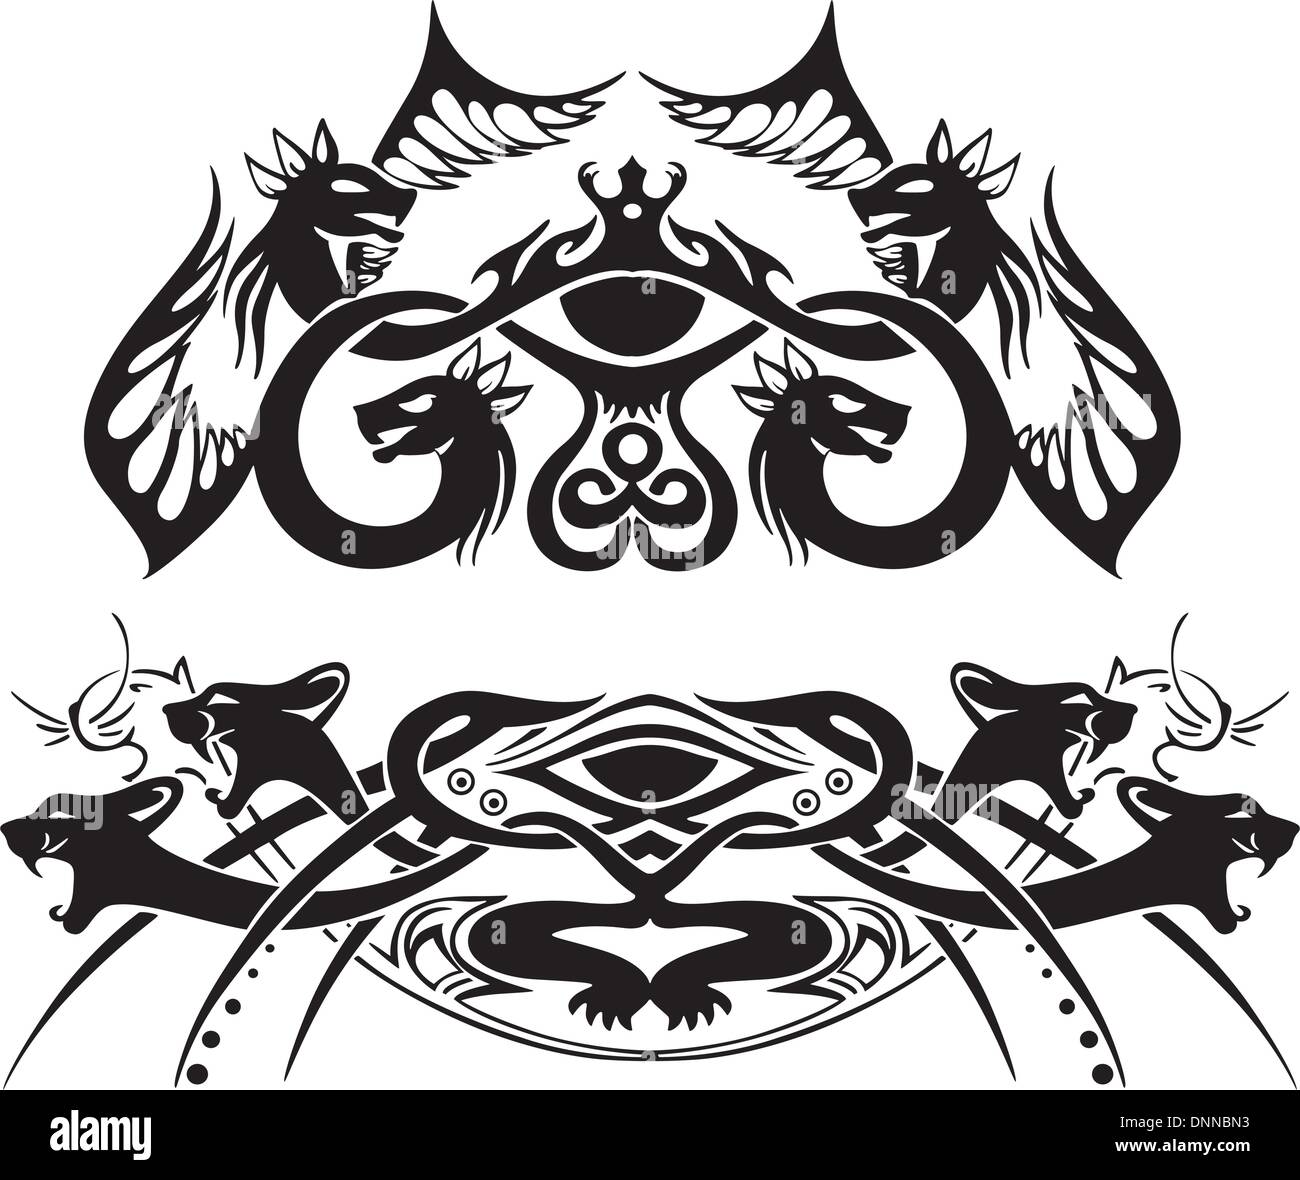 Stilizzata vignette simmetrica con draghi e gatti. Illustrazione vettoriale EPS8 Illustrazione Vettoriale